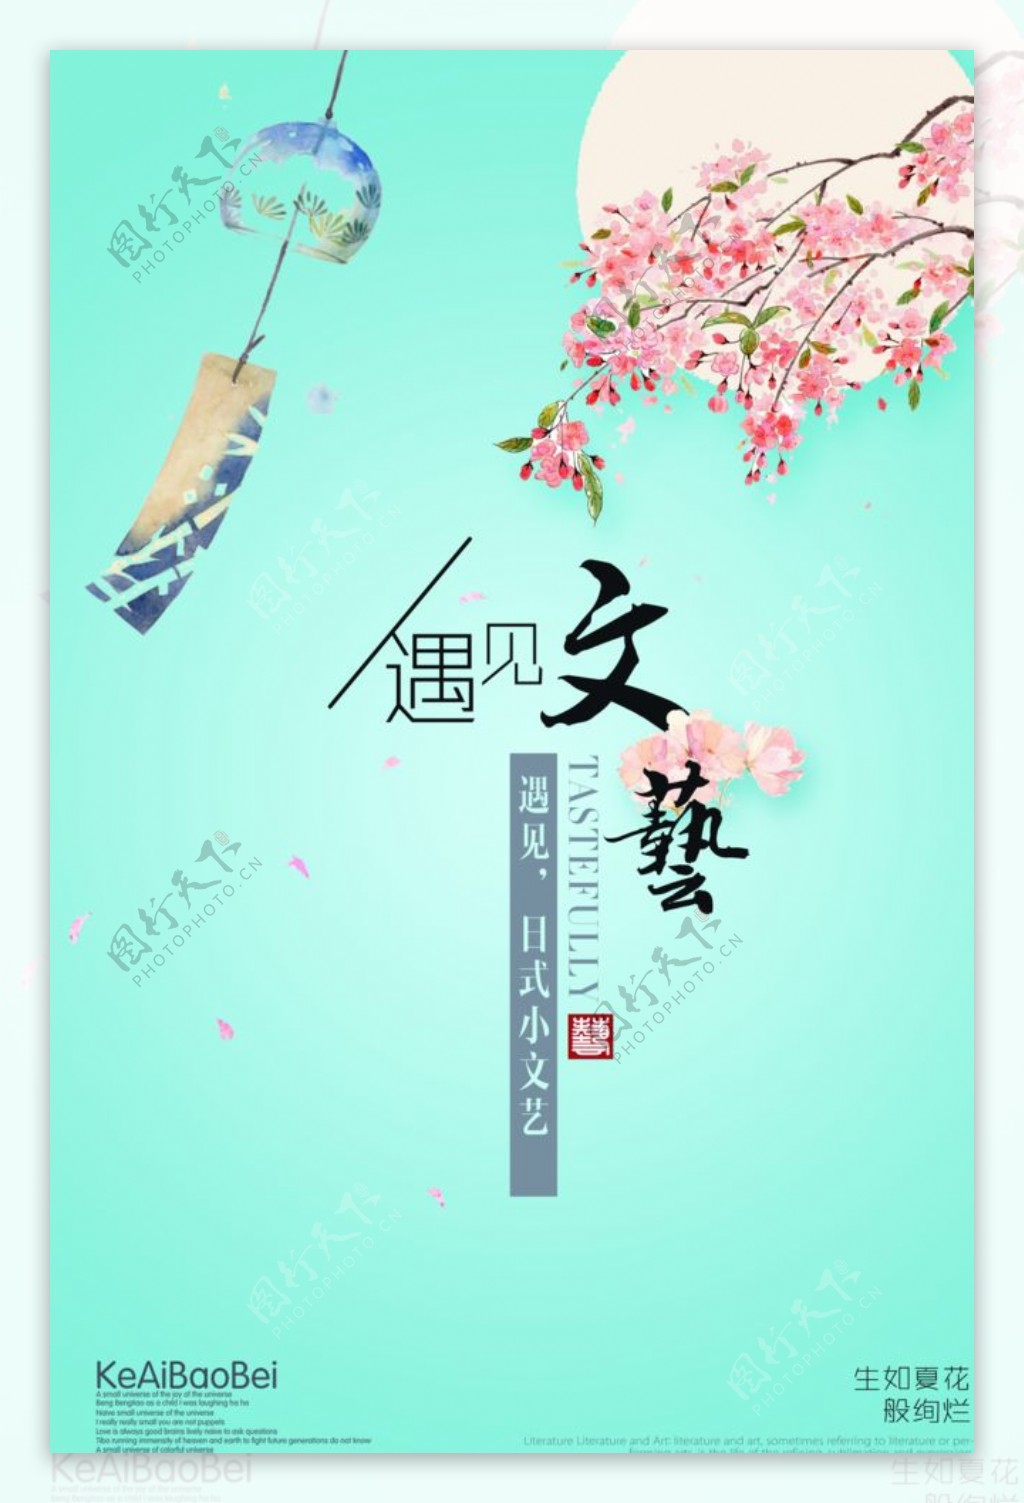 中国风文艺海报